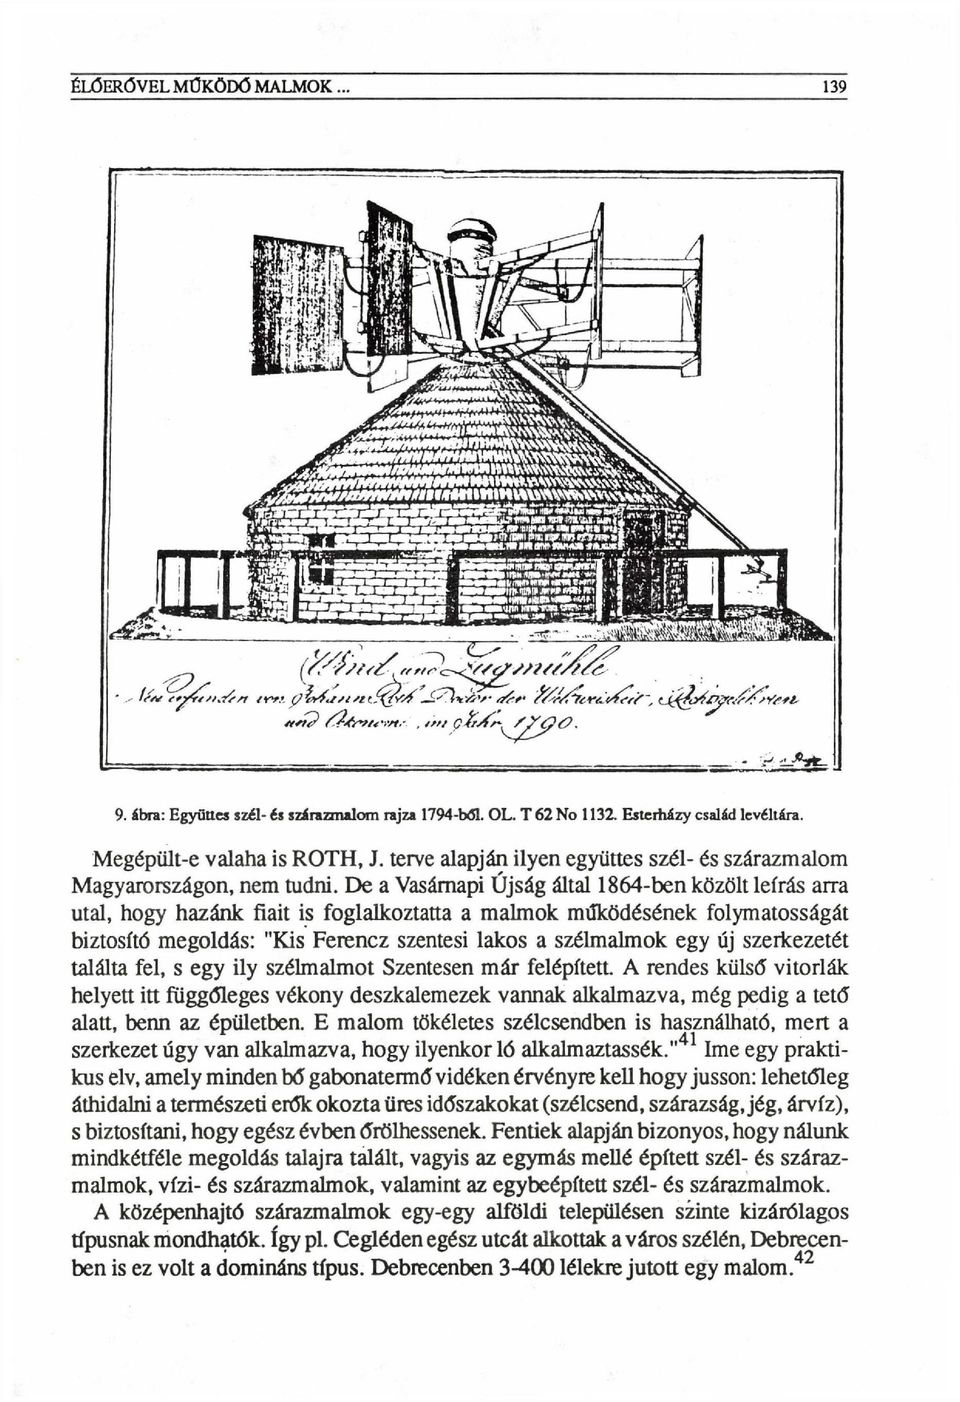 De a Vasárnapi Újság által 1864-ben közölt leírás arra utal, hogy hazánk fiait is foglalkoztatta a malmok működésének folymatosságát biztosító megoldás: "Kis Ferencz szentesi lakos a szélmalmok egy